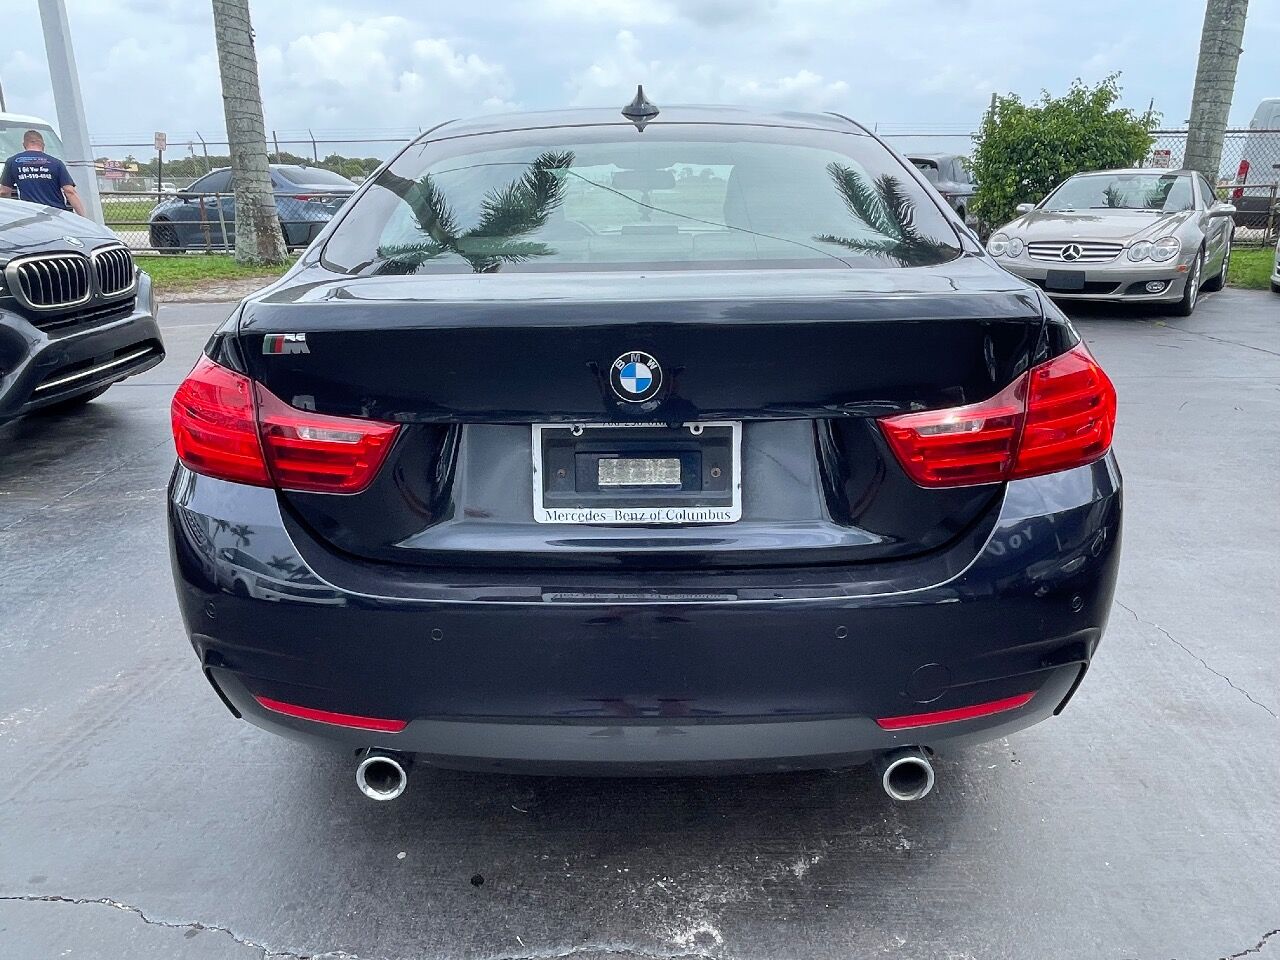 2015 BMW 435i Sedan - $14,900